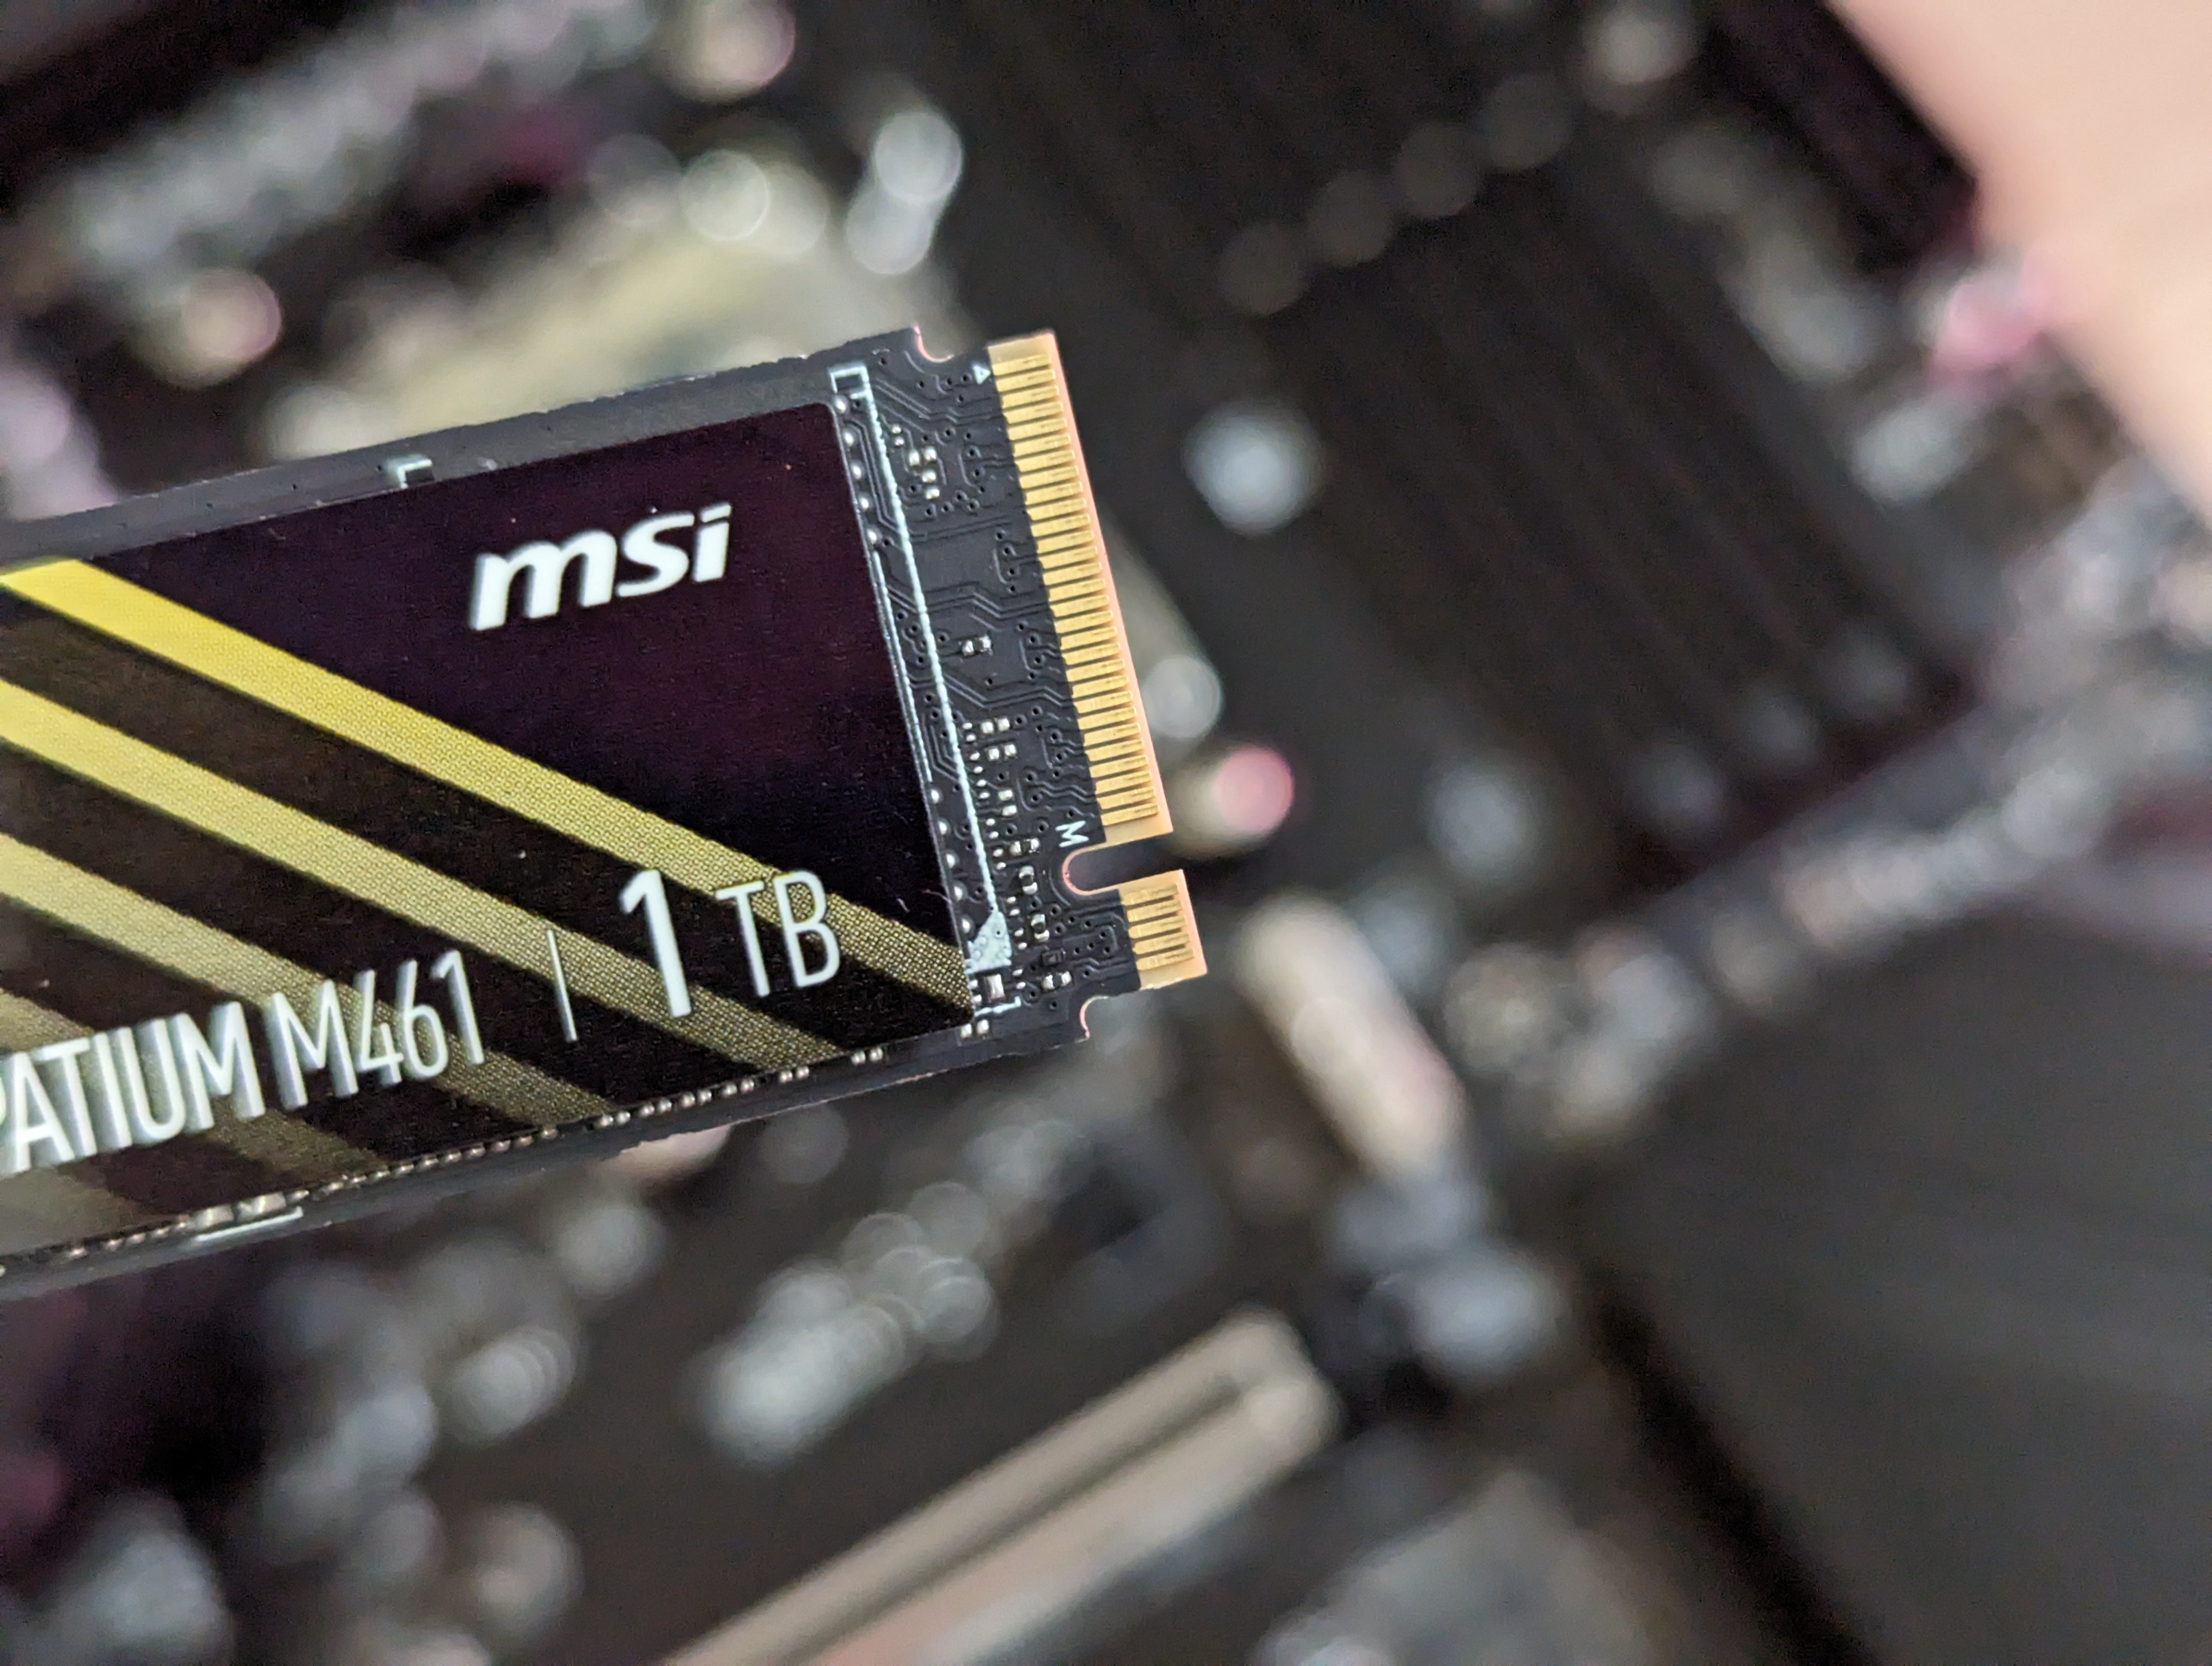 M2 SSD MSI Spatium M461 se efter hakket.jpg